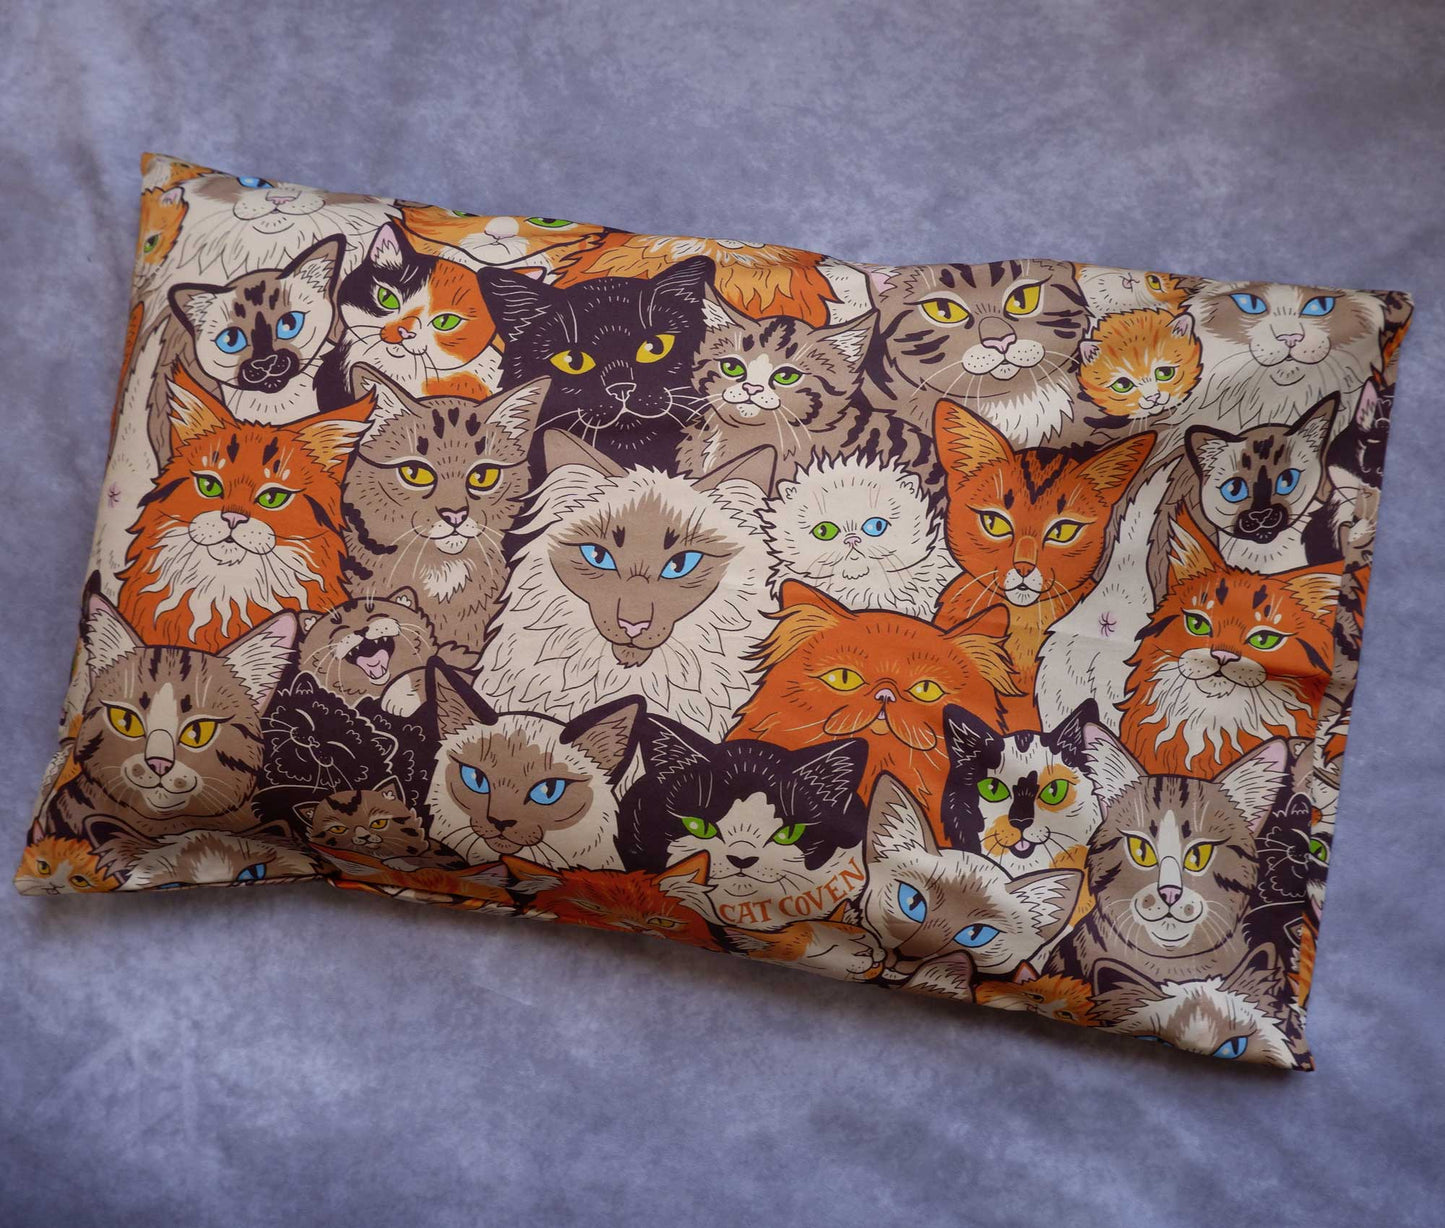 Clutter of Cats - Pillow Case